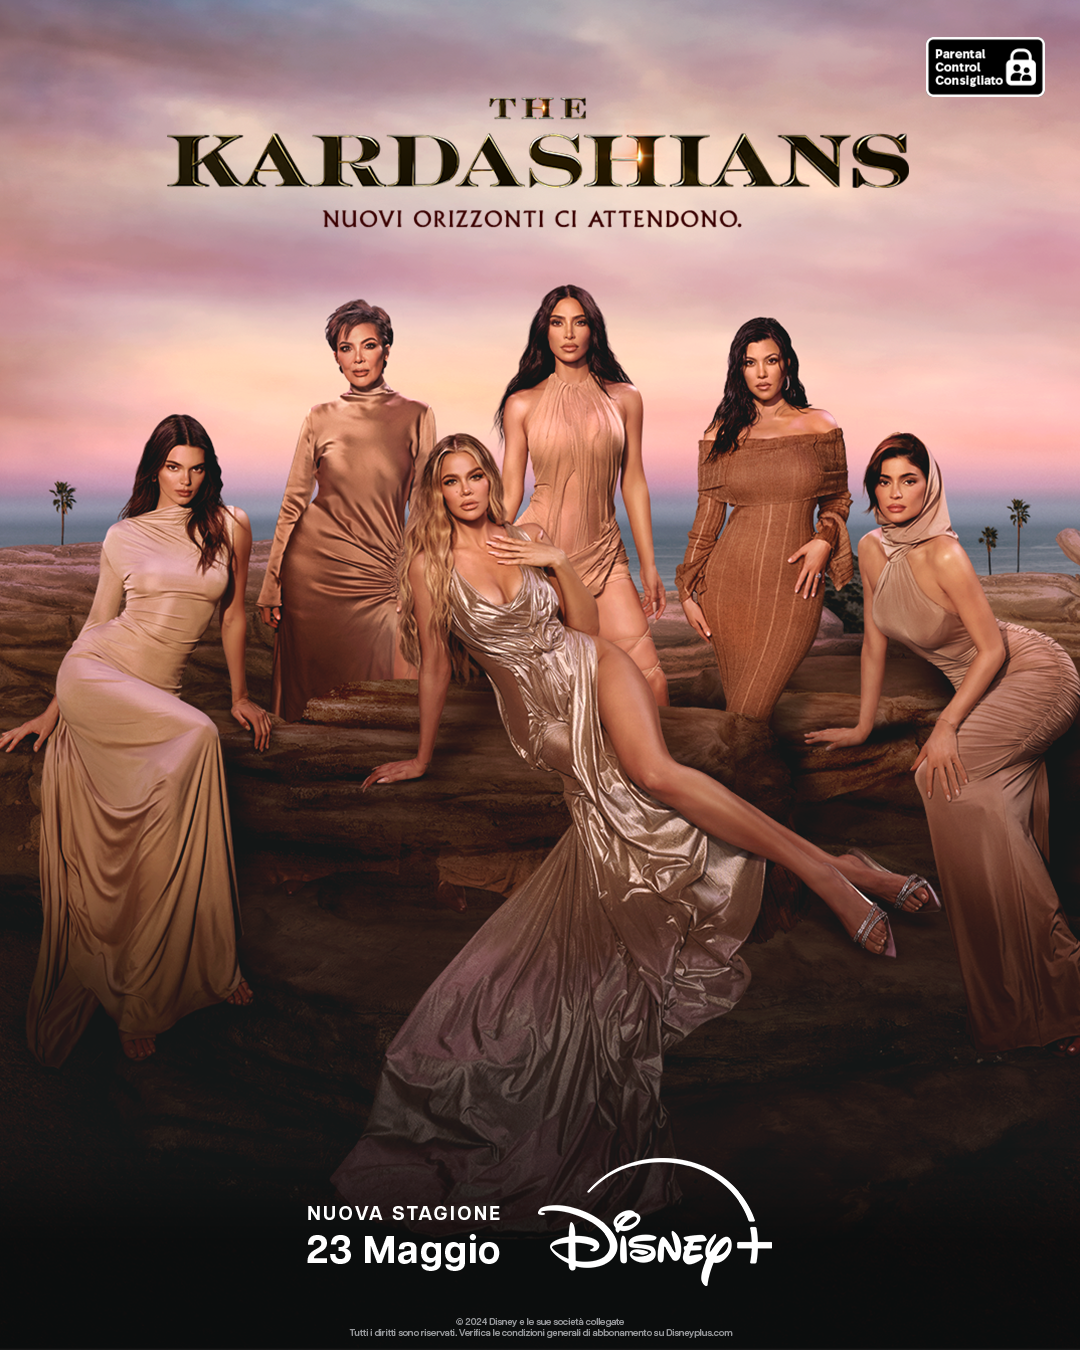 La serie “The Kardashians” su Disney+